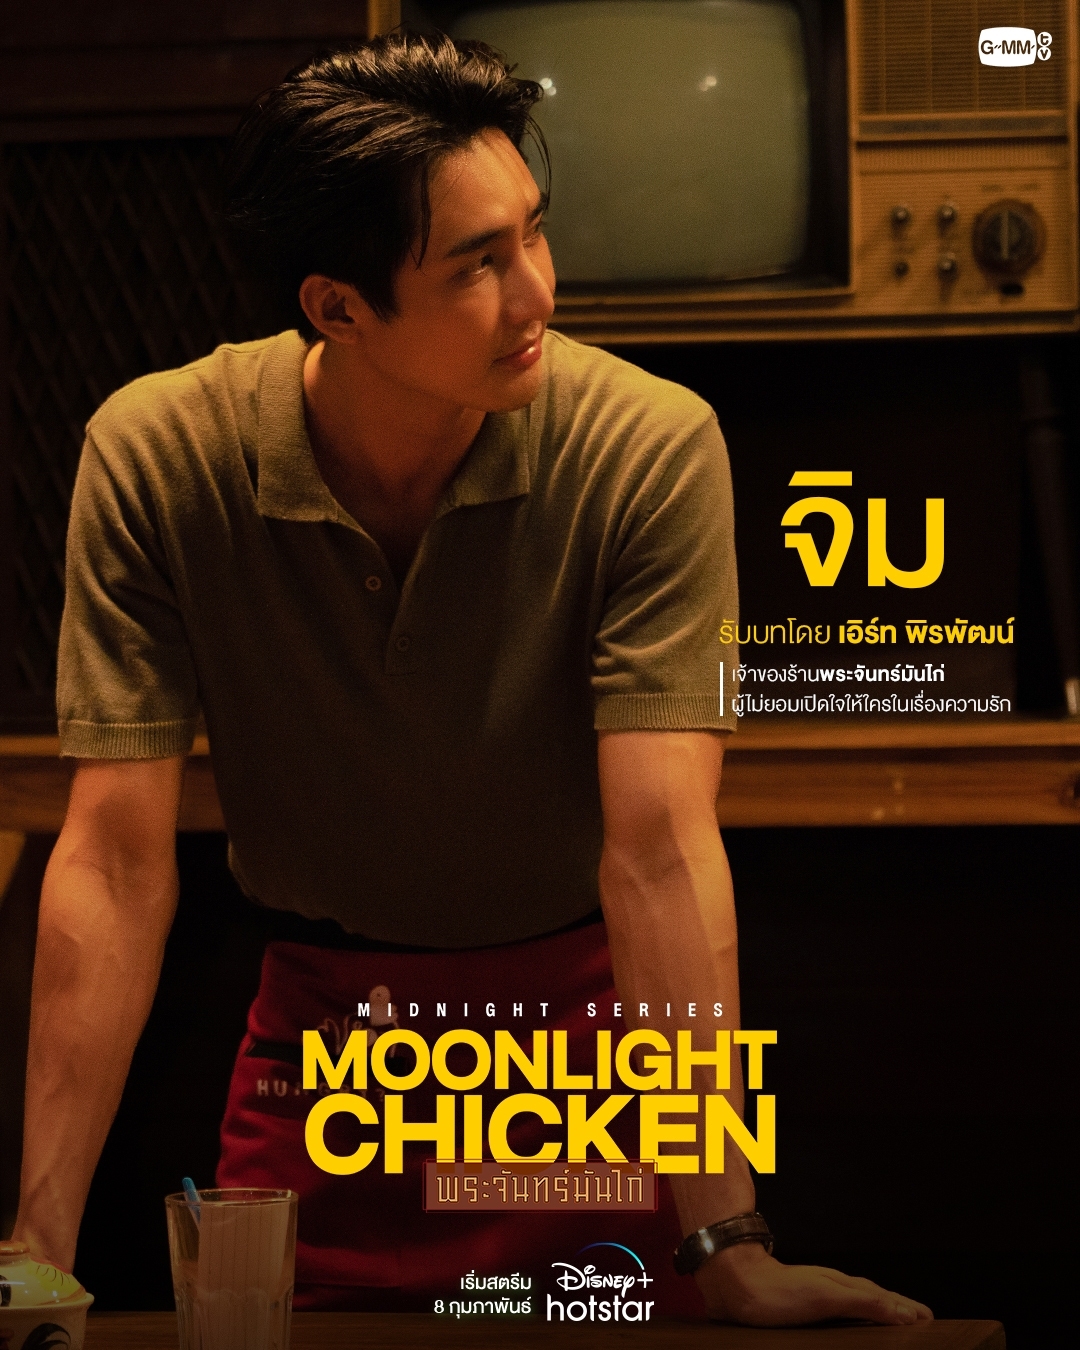 Moonlight Chicken เอิร์ท พิรพัฒน์